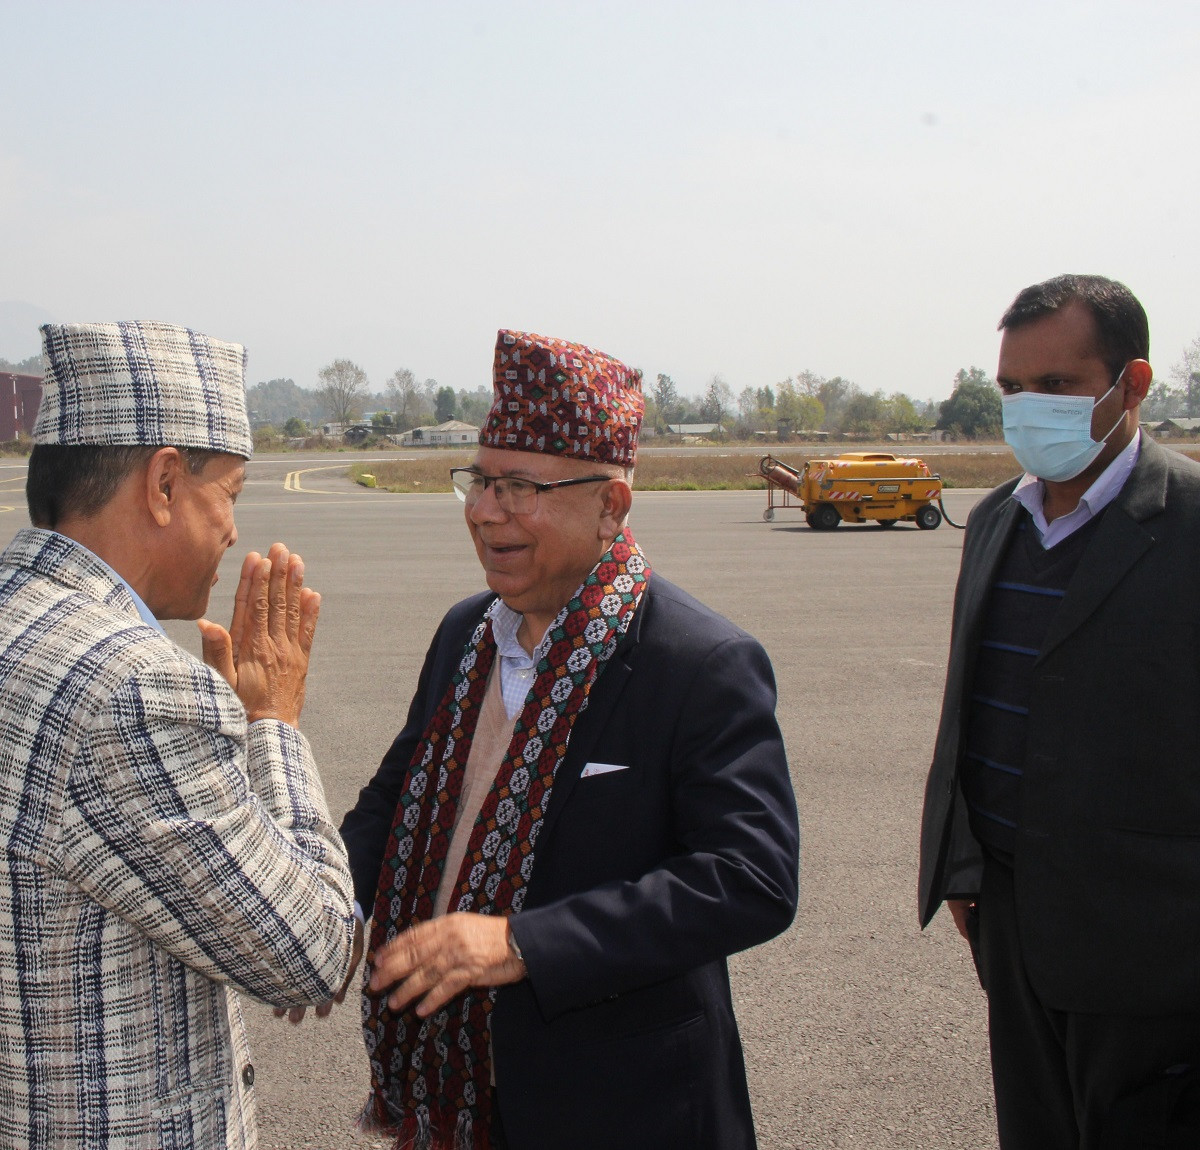 राजनीतिक कोर्स परिवर्तनको बलियो शक्ति हामी हौँ : अध्यक्ष नेपाल